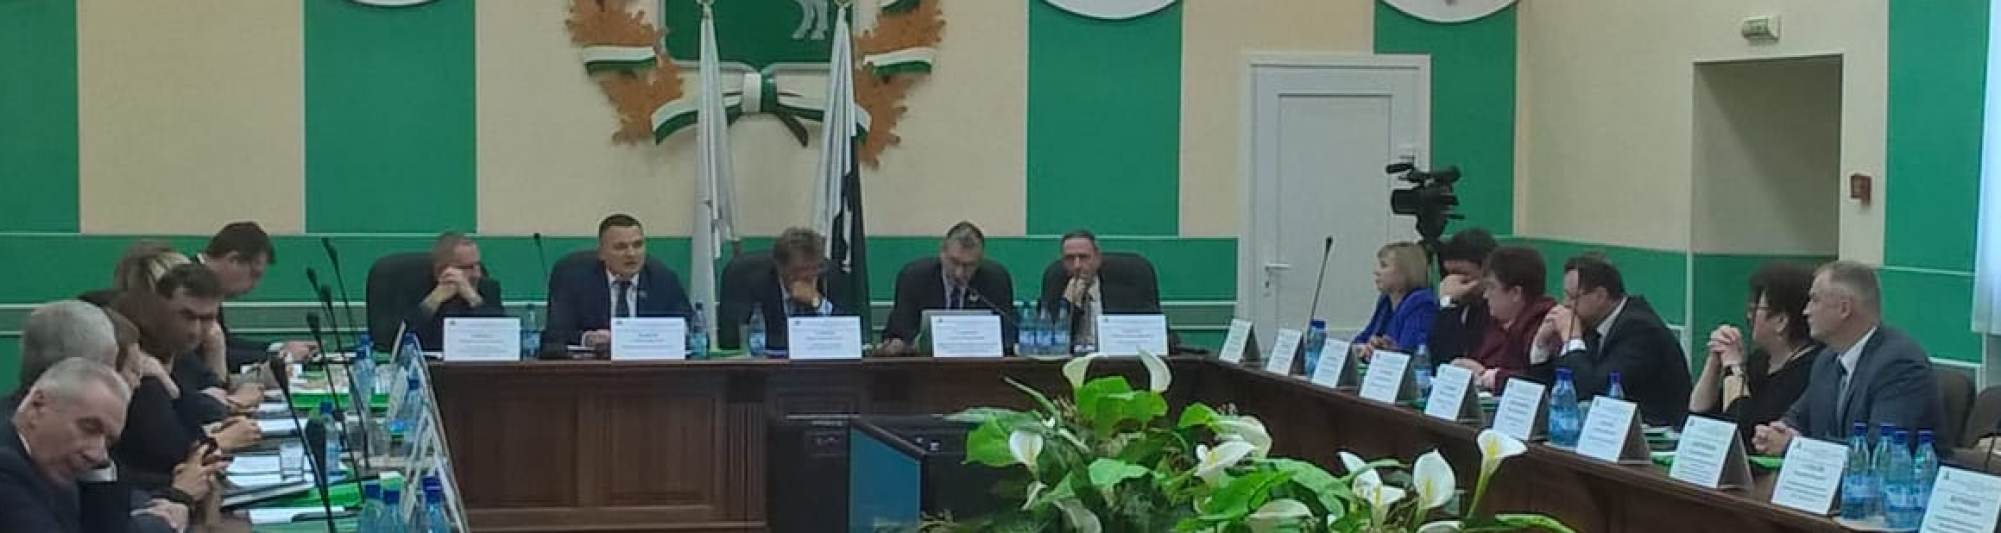 Сергей Панов выступил с приветственным словом на открытии конференции АСДГ